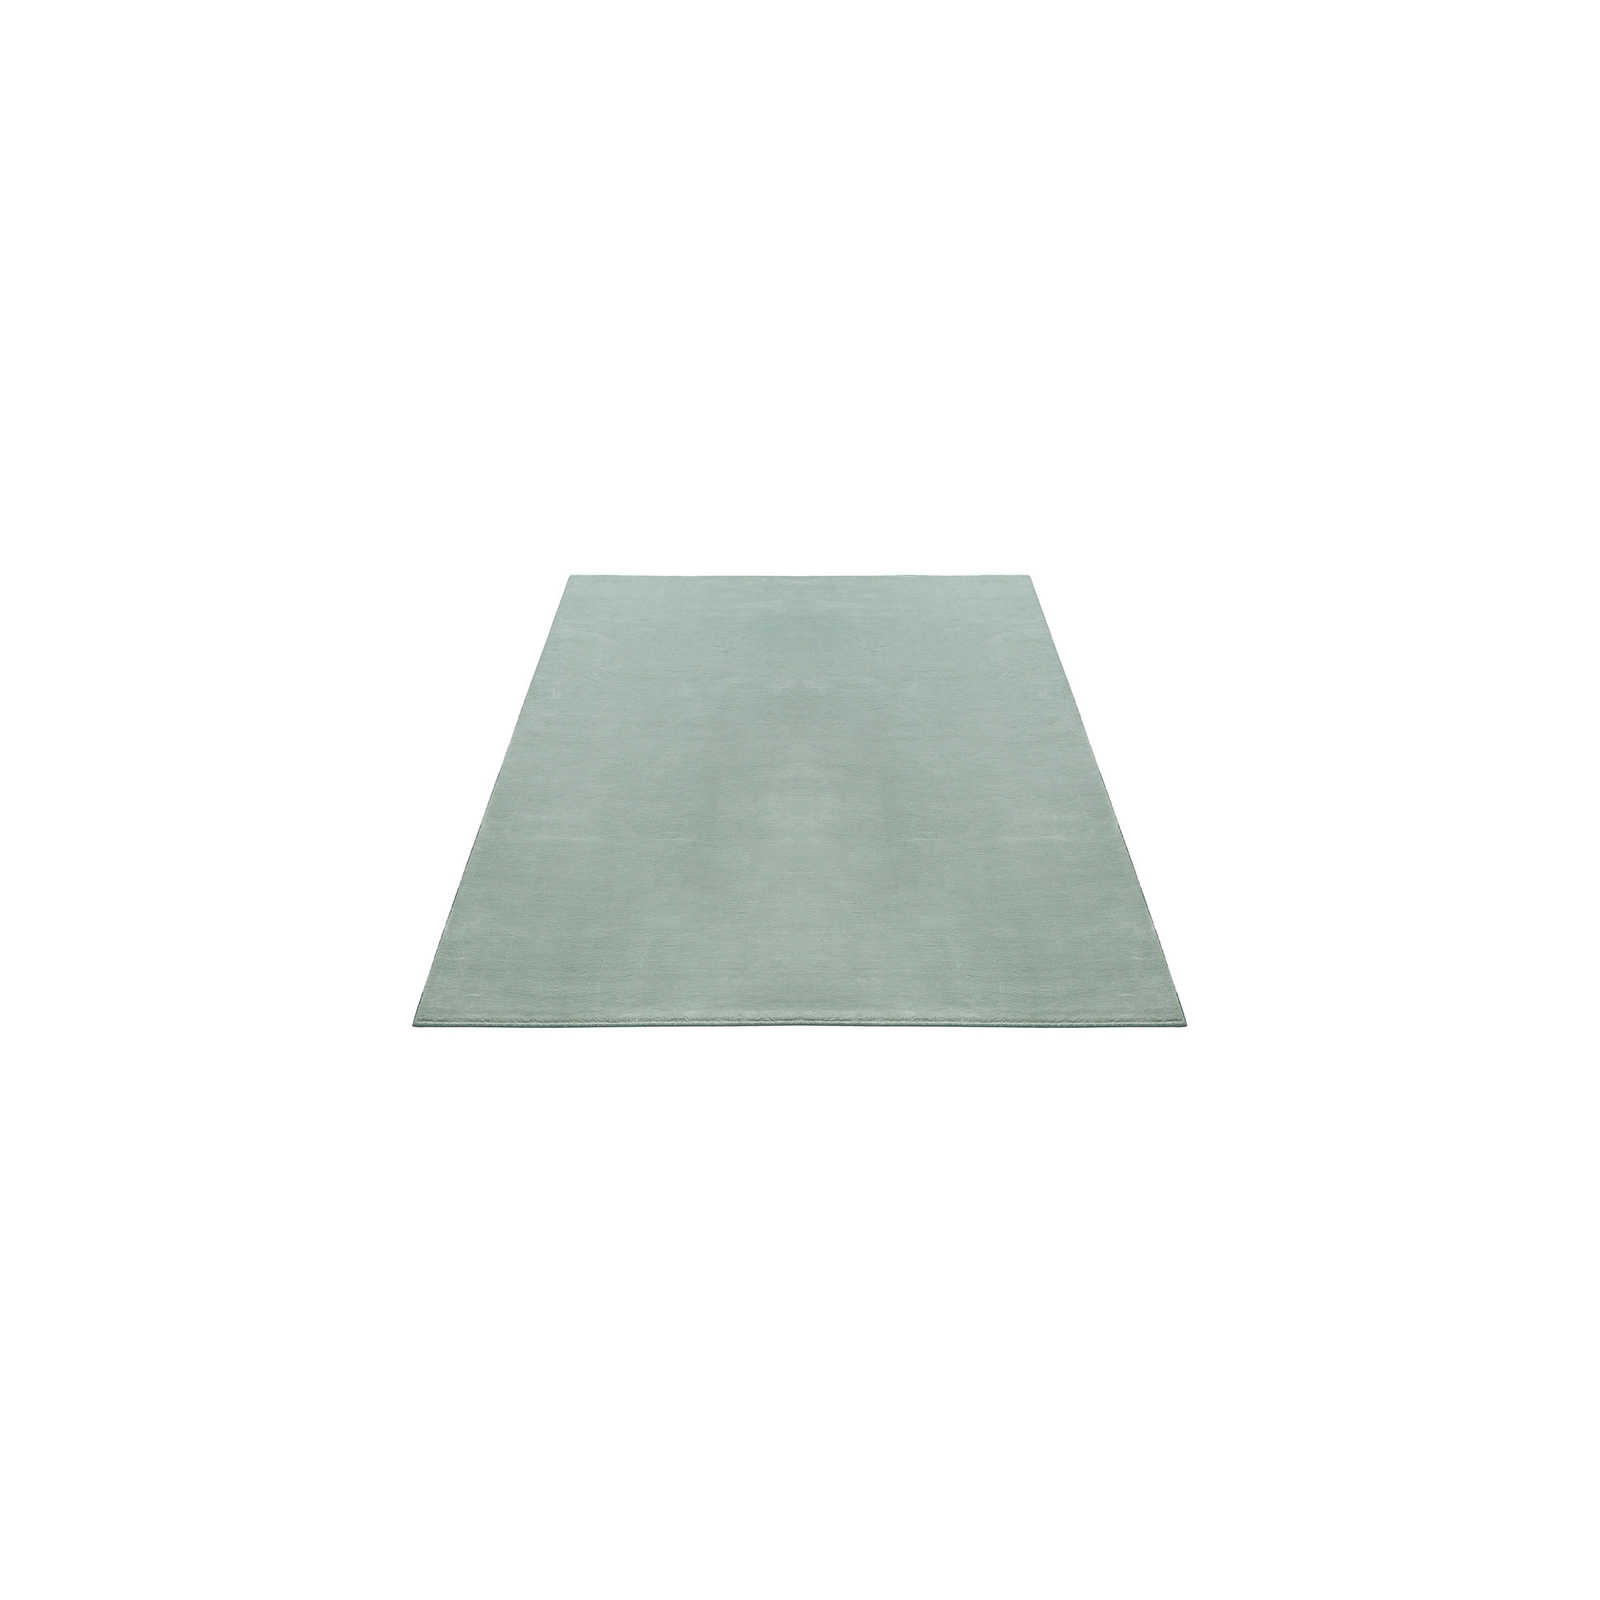 Weicher Hochflor Teppich in sanften Grün – 150 x 80 cm
